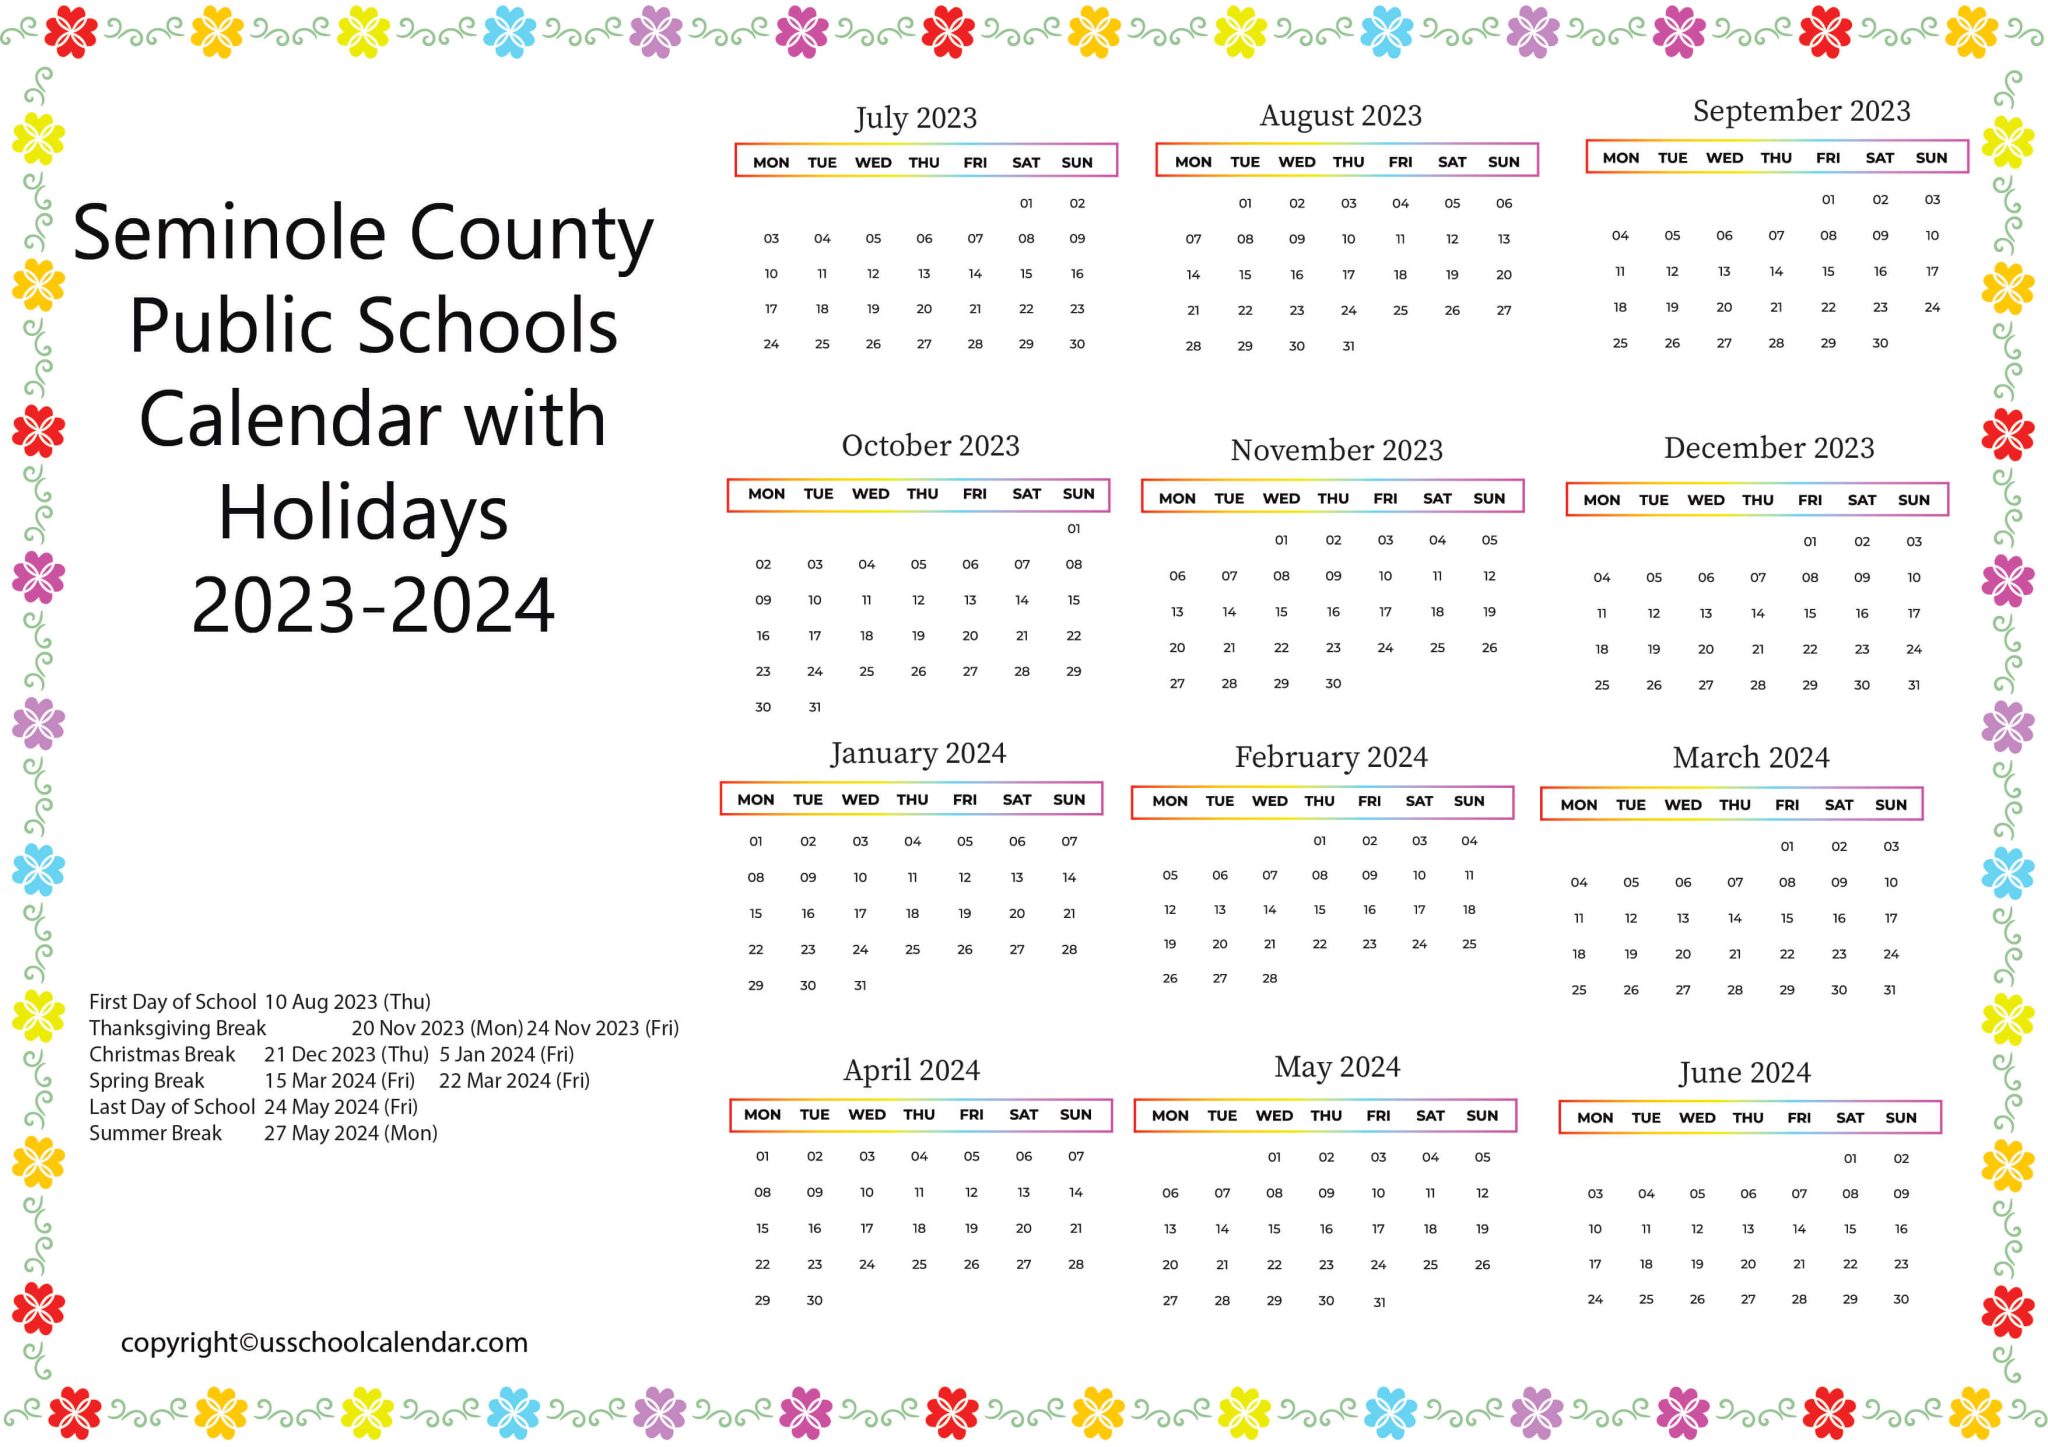 Seminole County Public Schools Calendar with Holidays 2023-2024